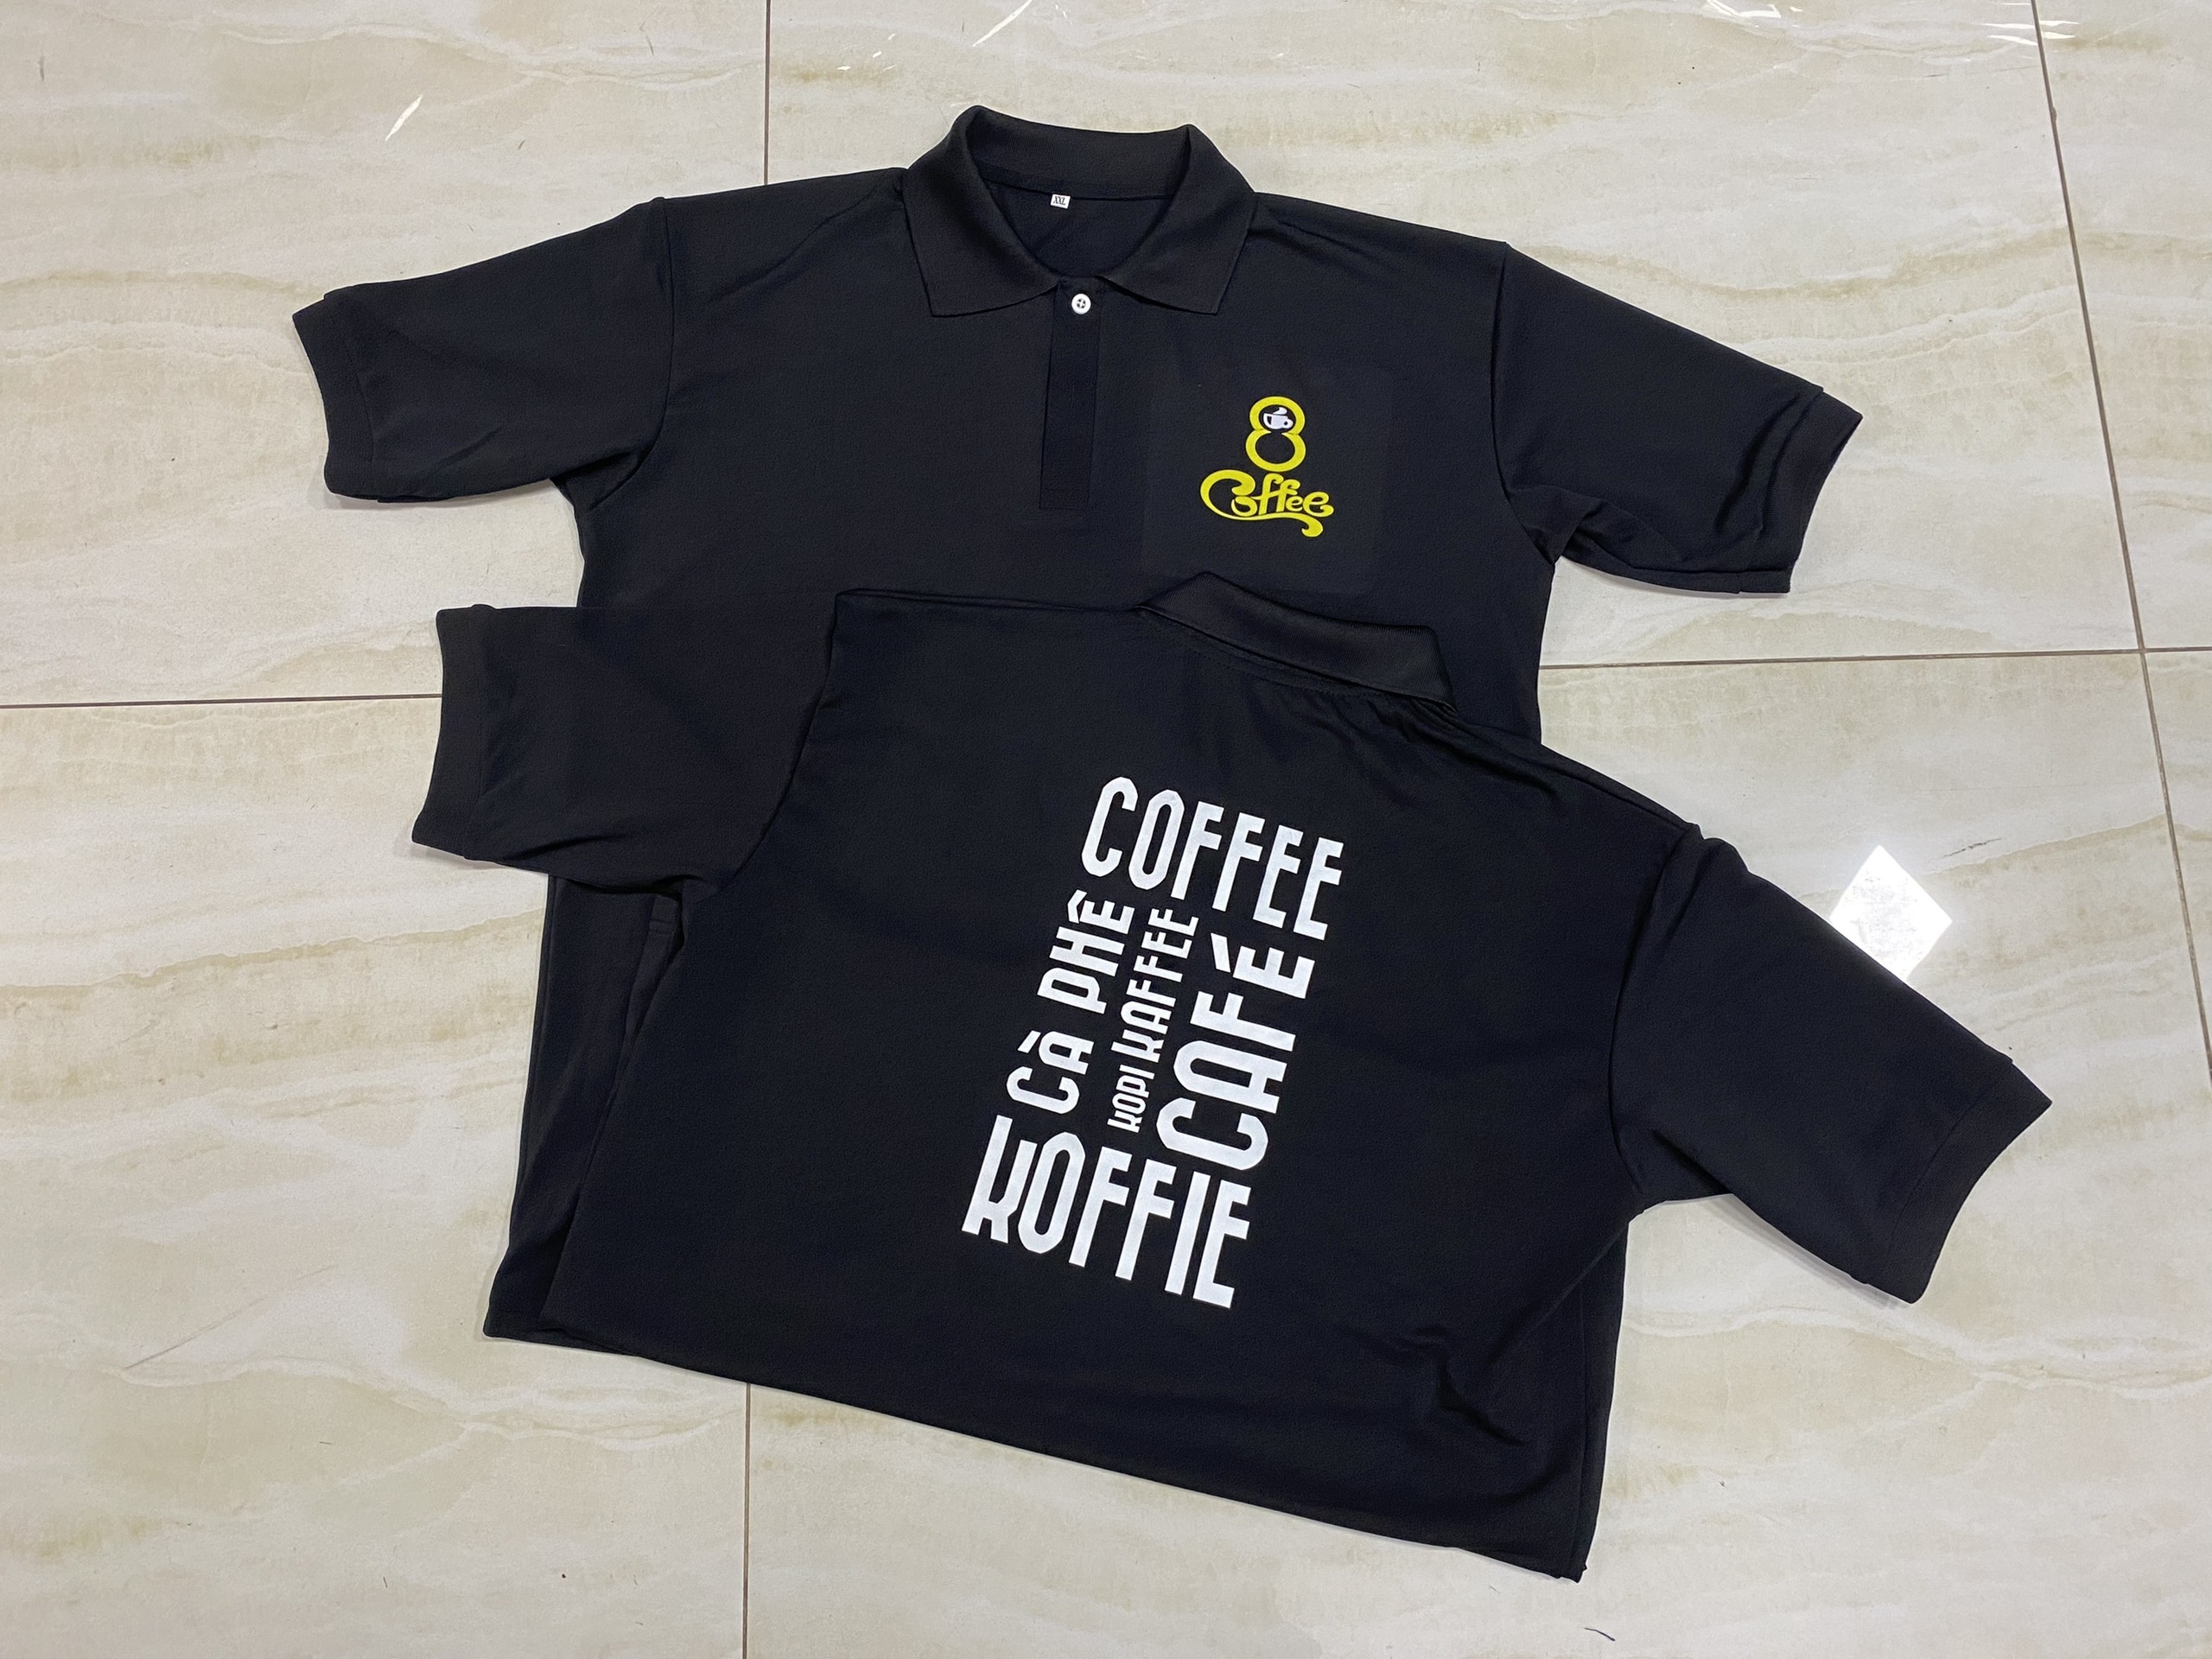 Xưởng áo phông, áo thun đồng phục nhân viên quán cà phê